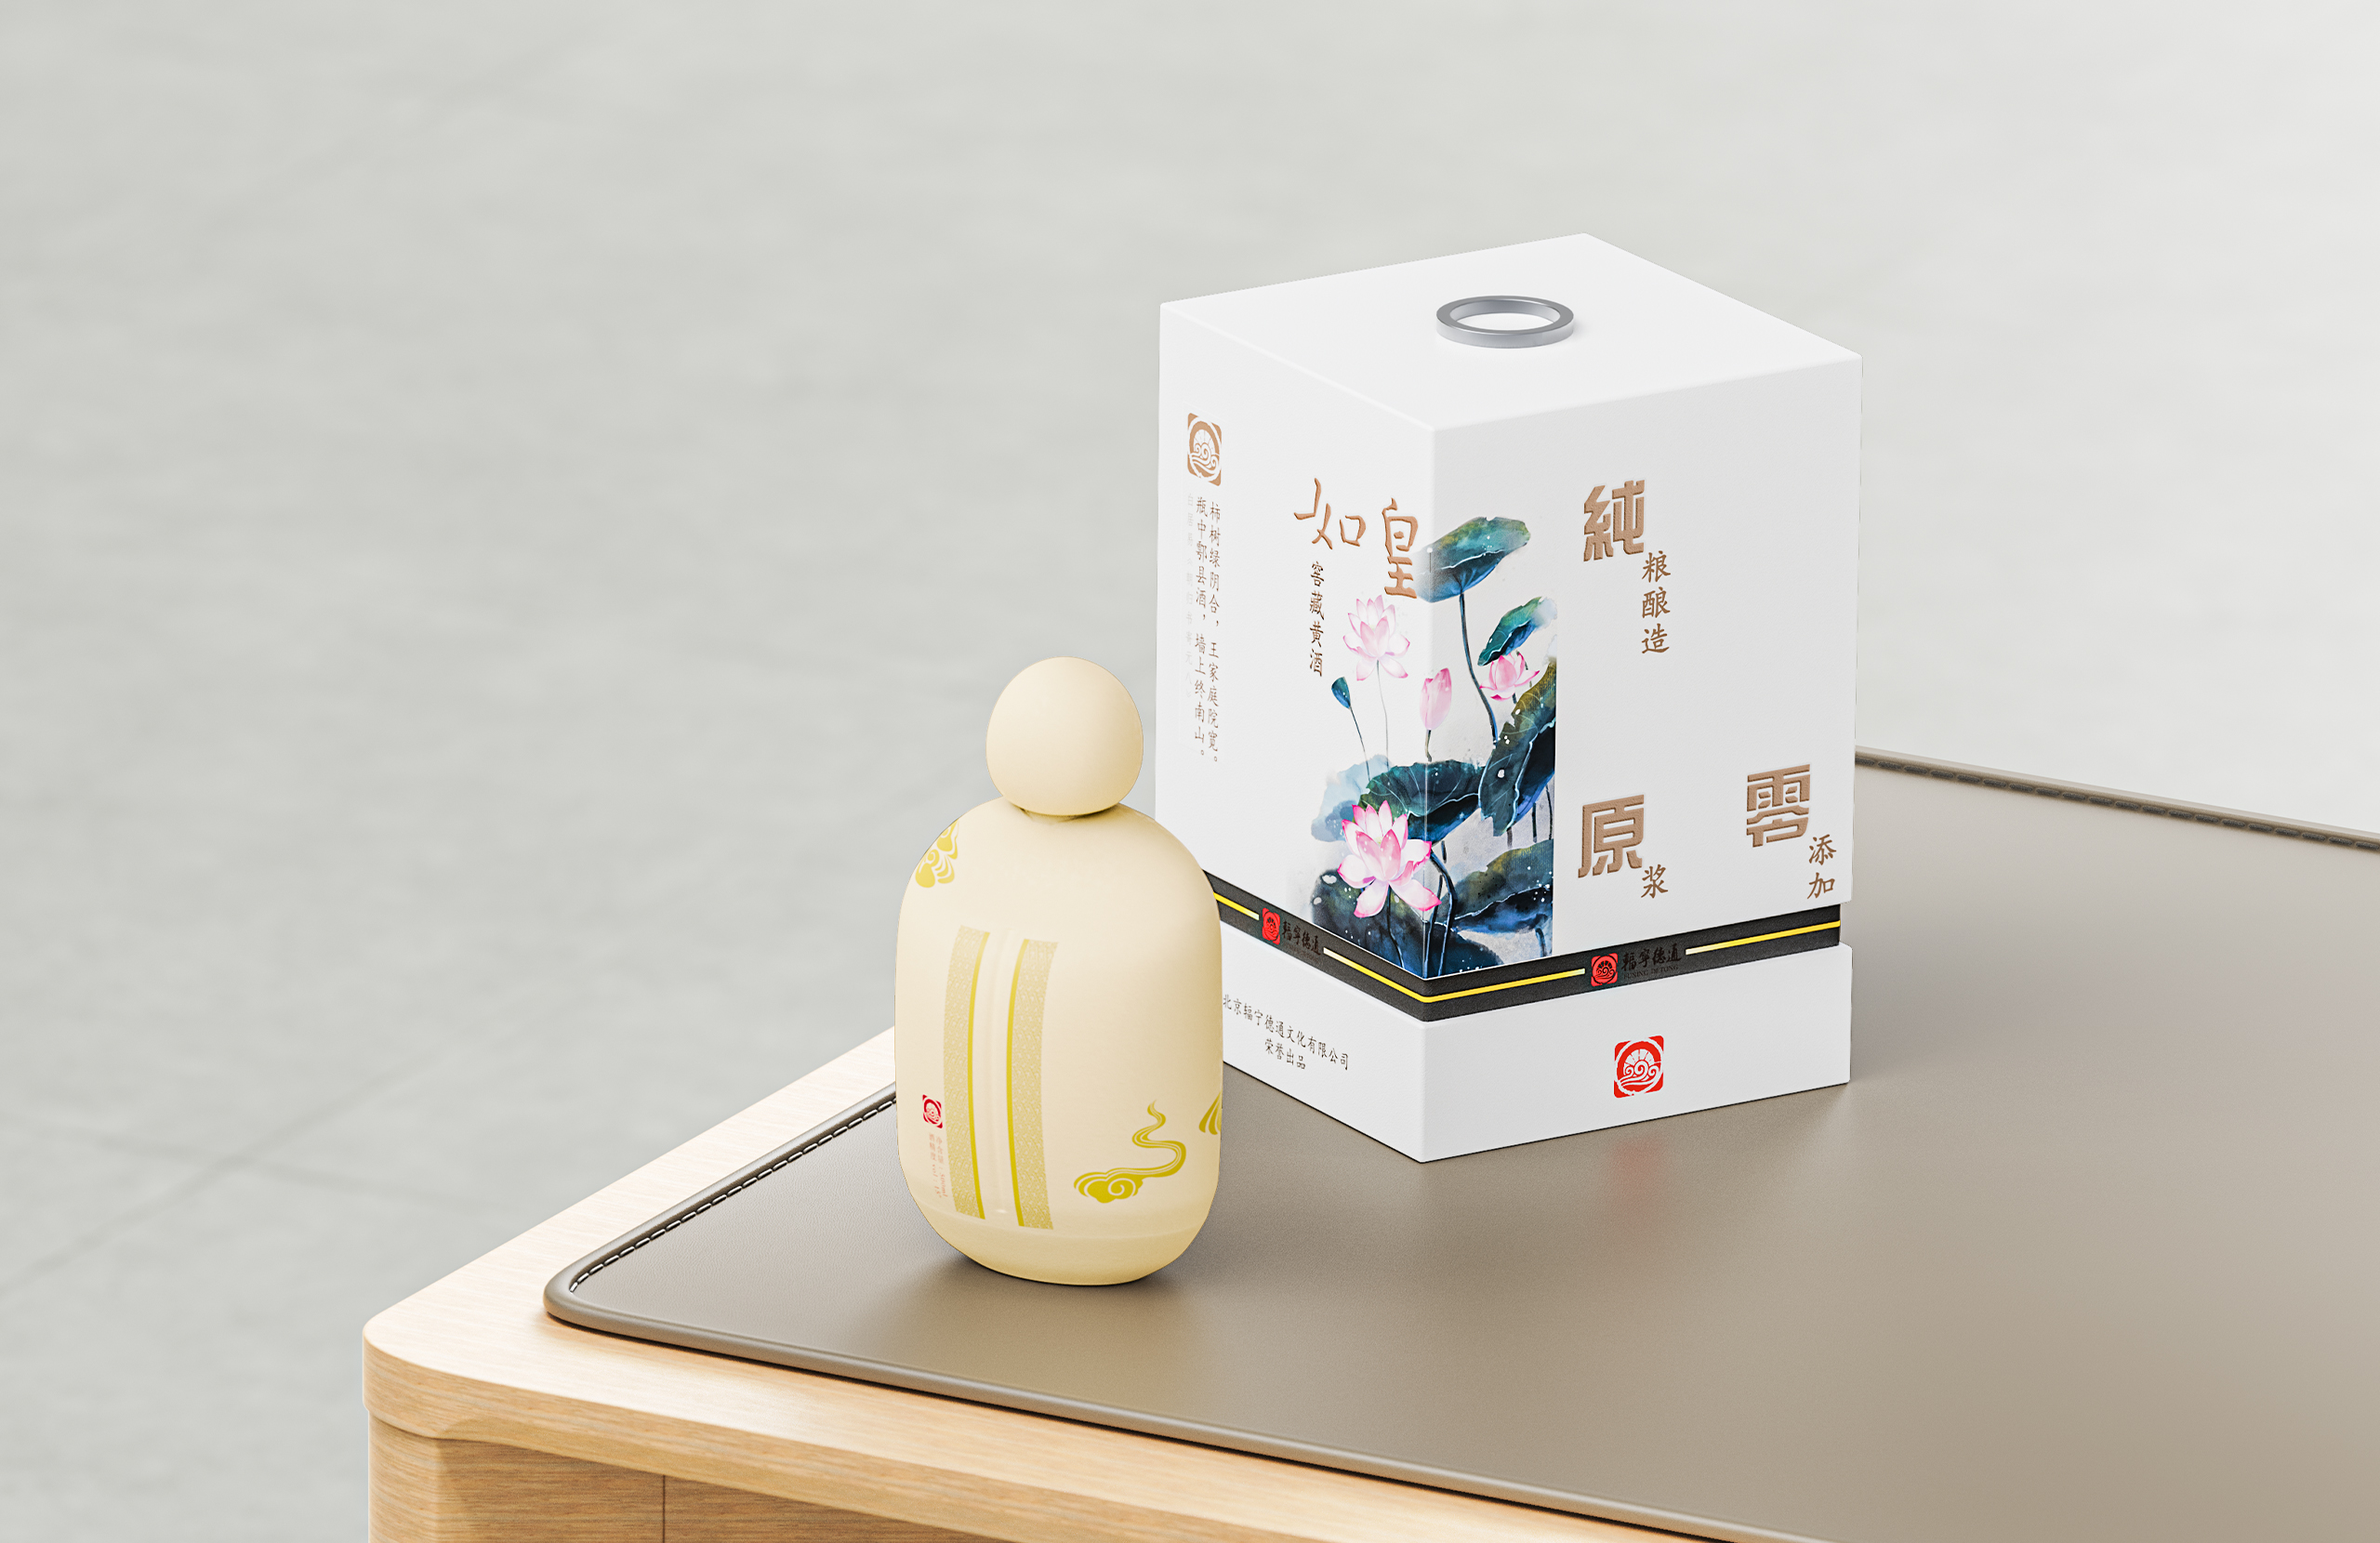 London Design Awards Winner - Fu Ning Detong yellow rice wine packaging